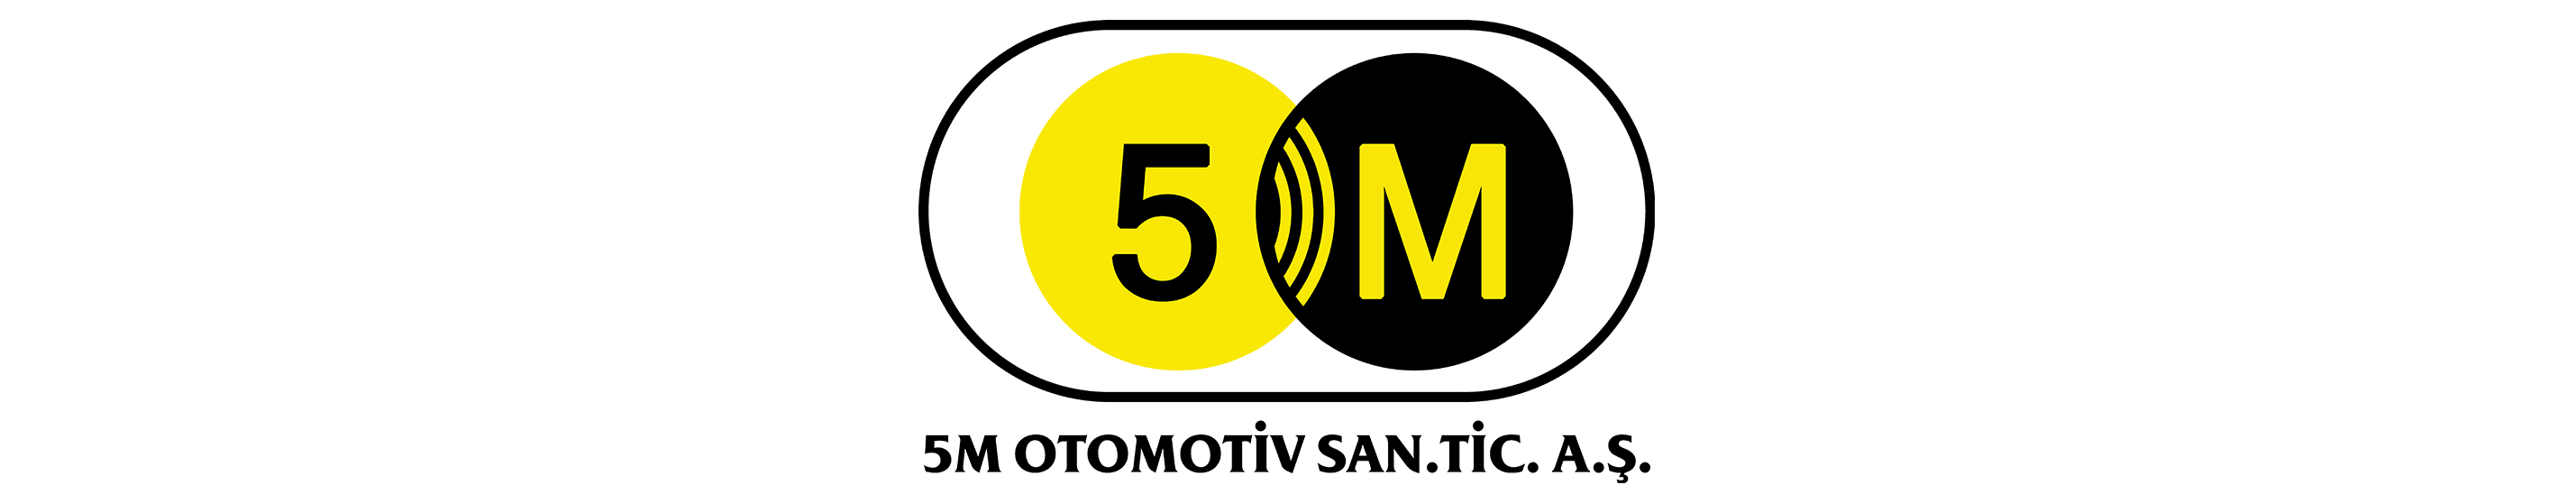 5M Otomotiv